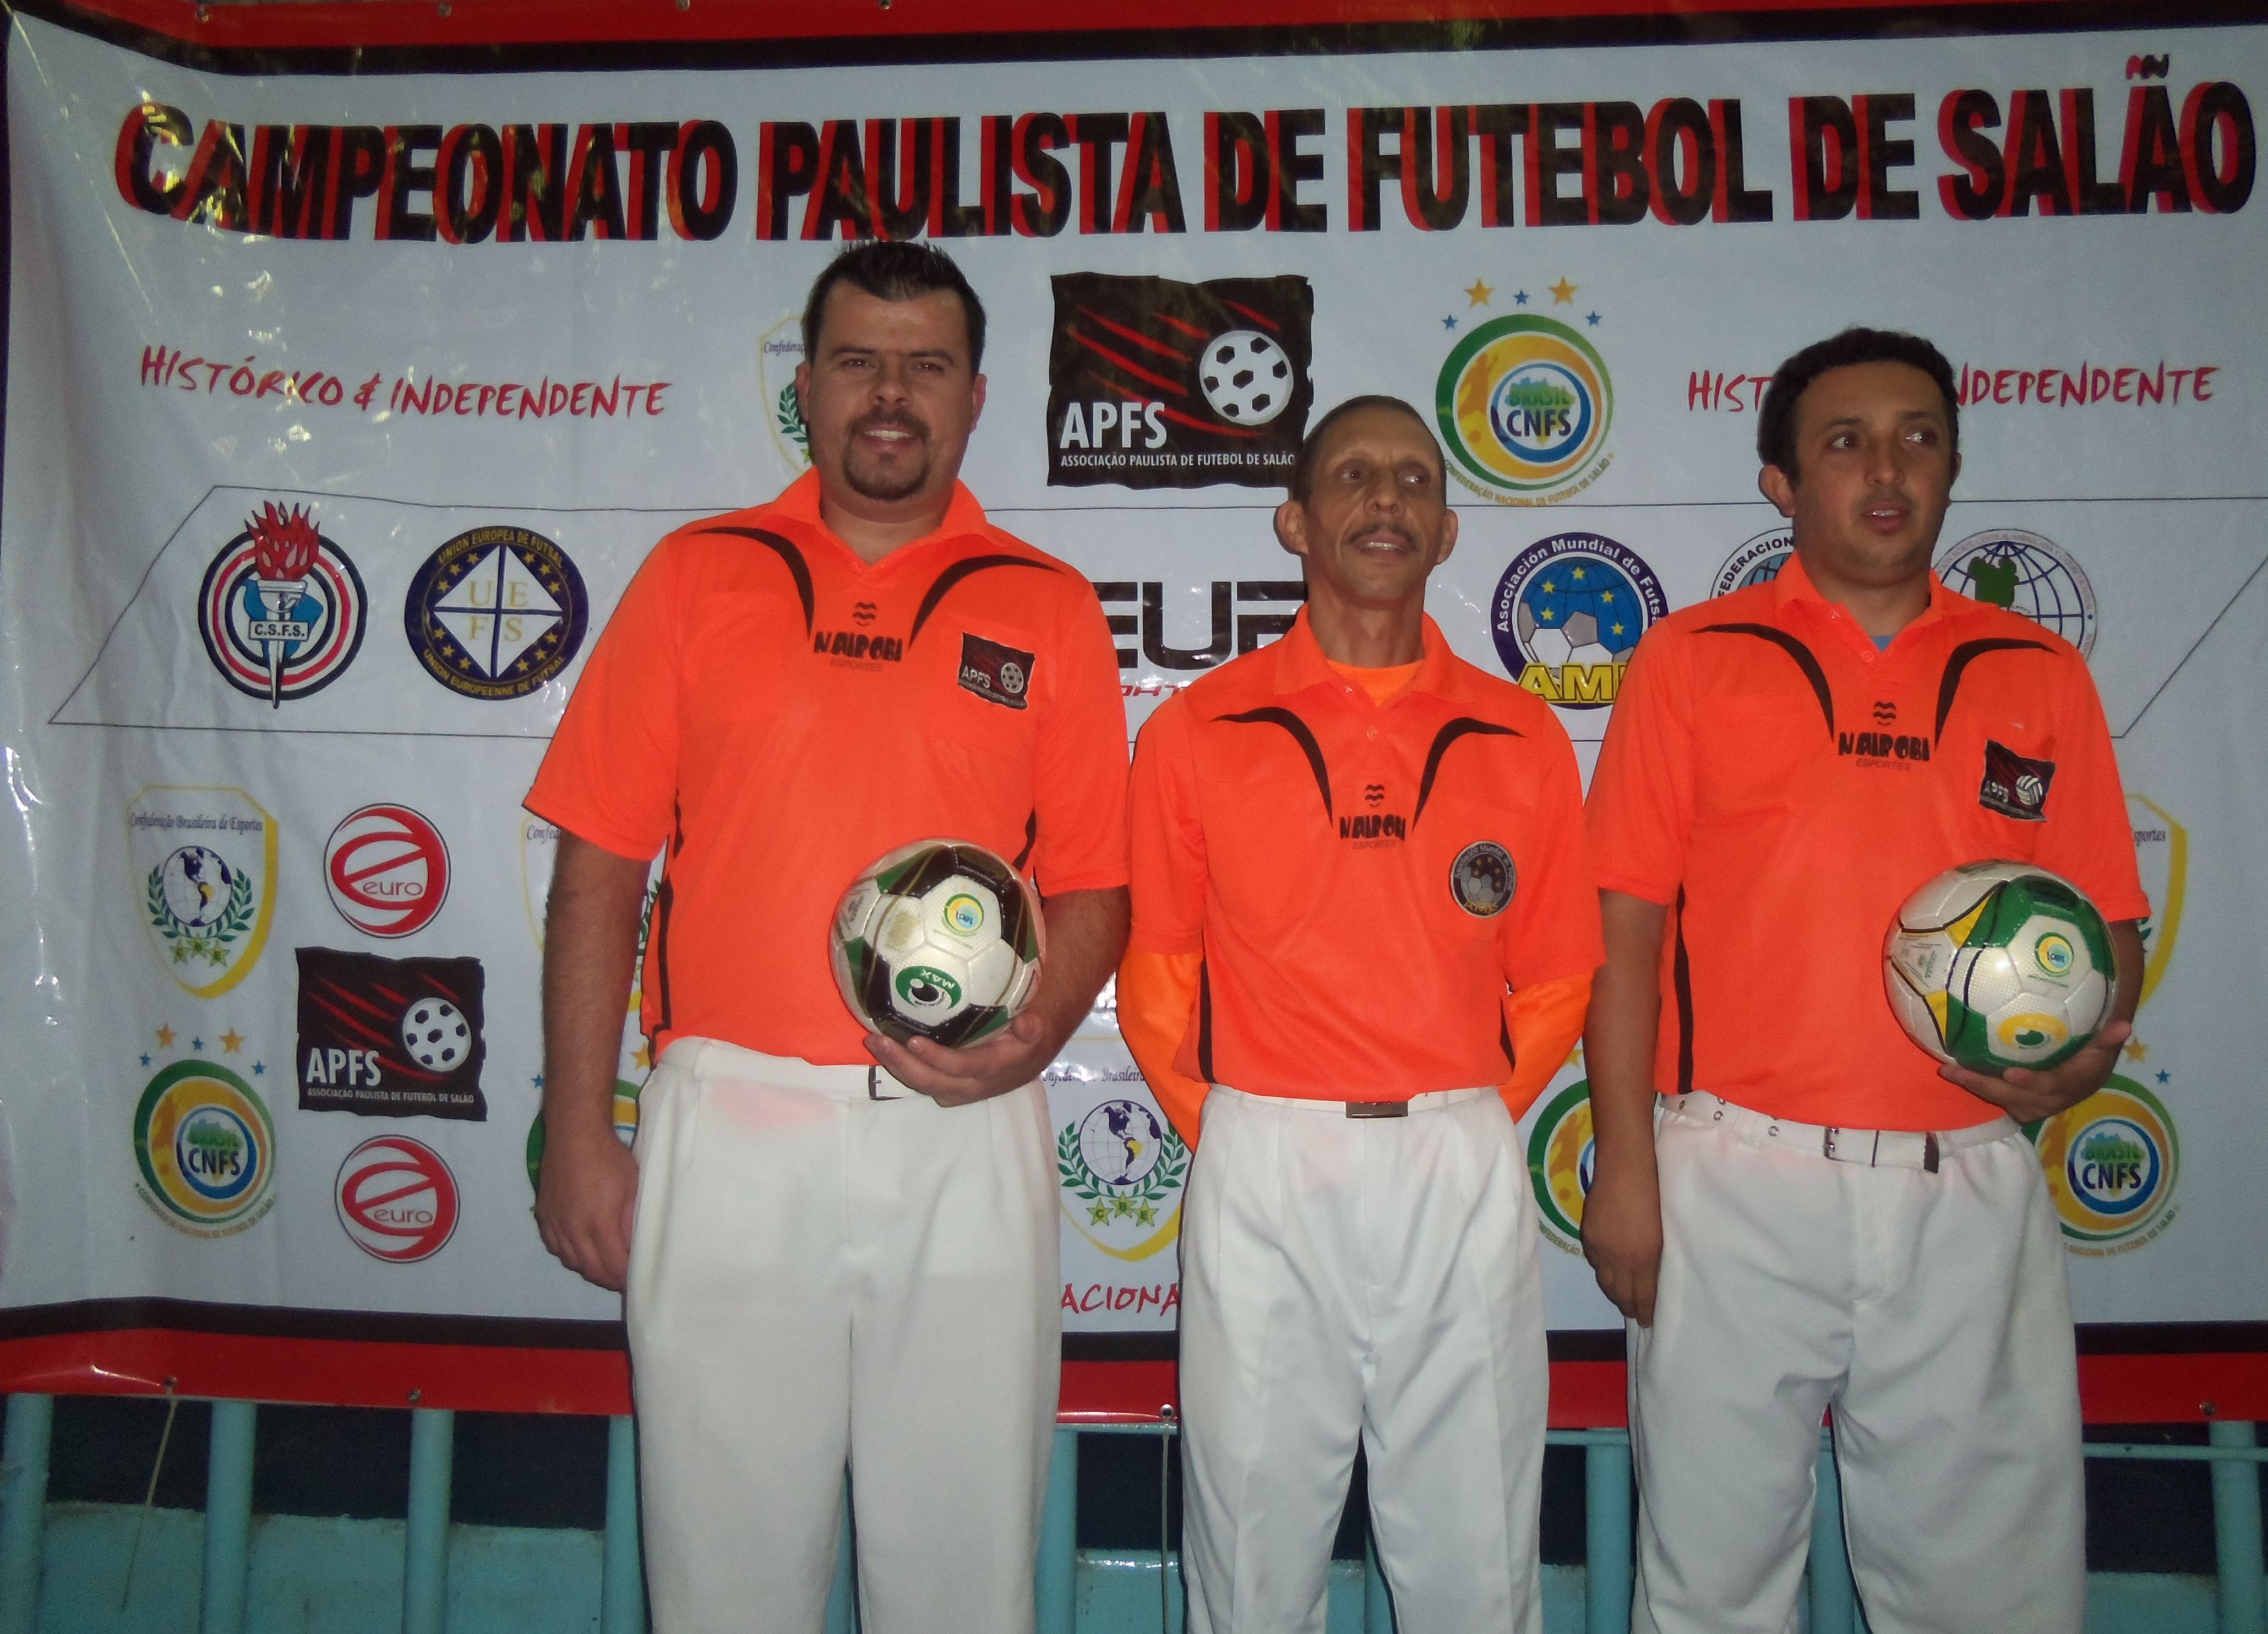 C.N.F.S. » Confederação Nacional de Futebol de Salão